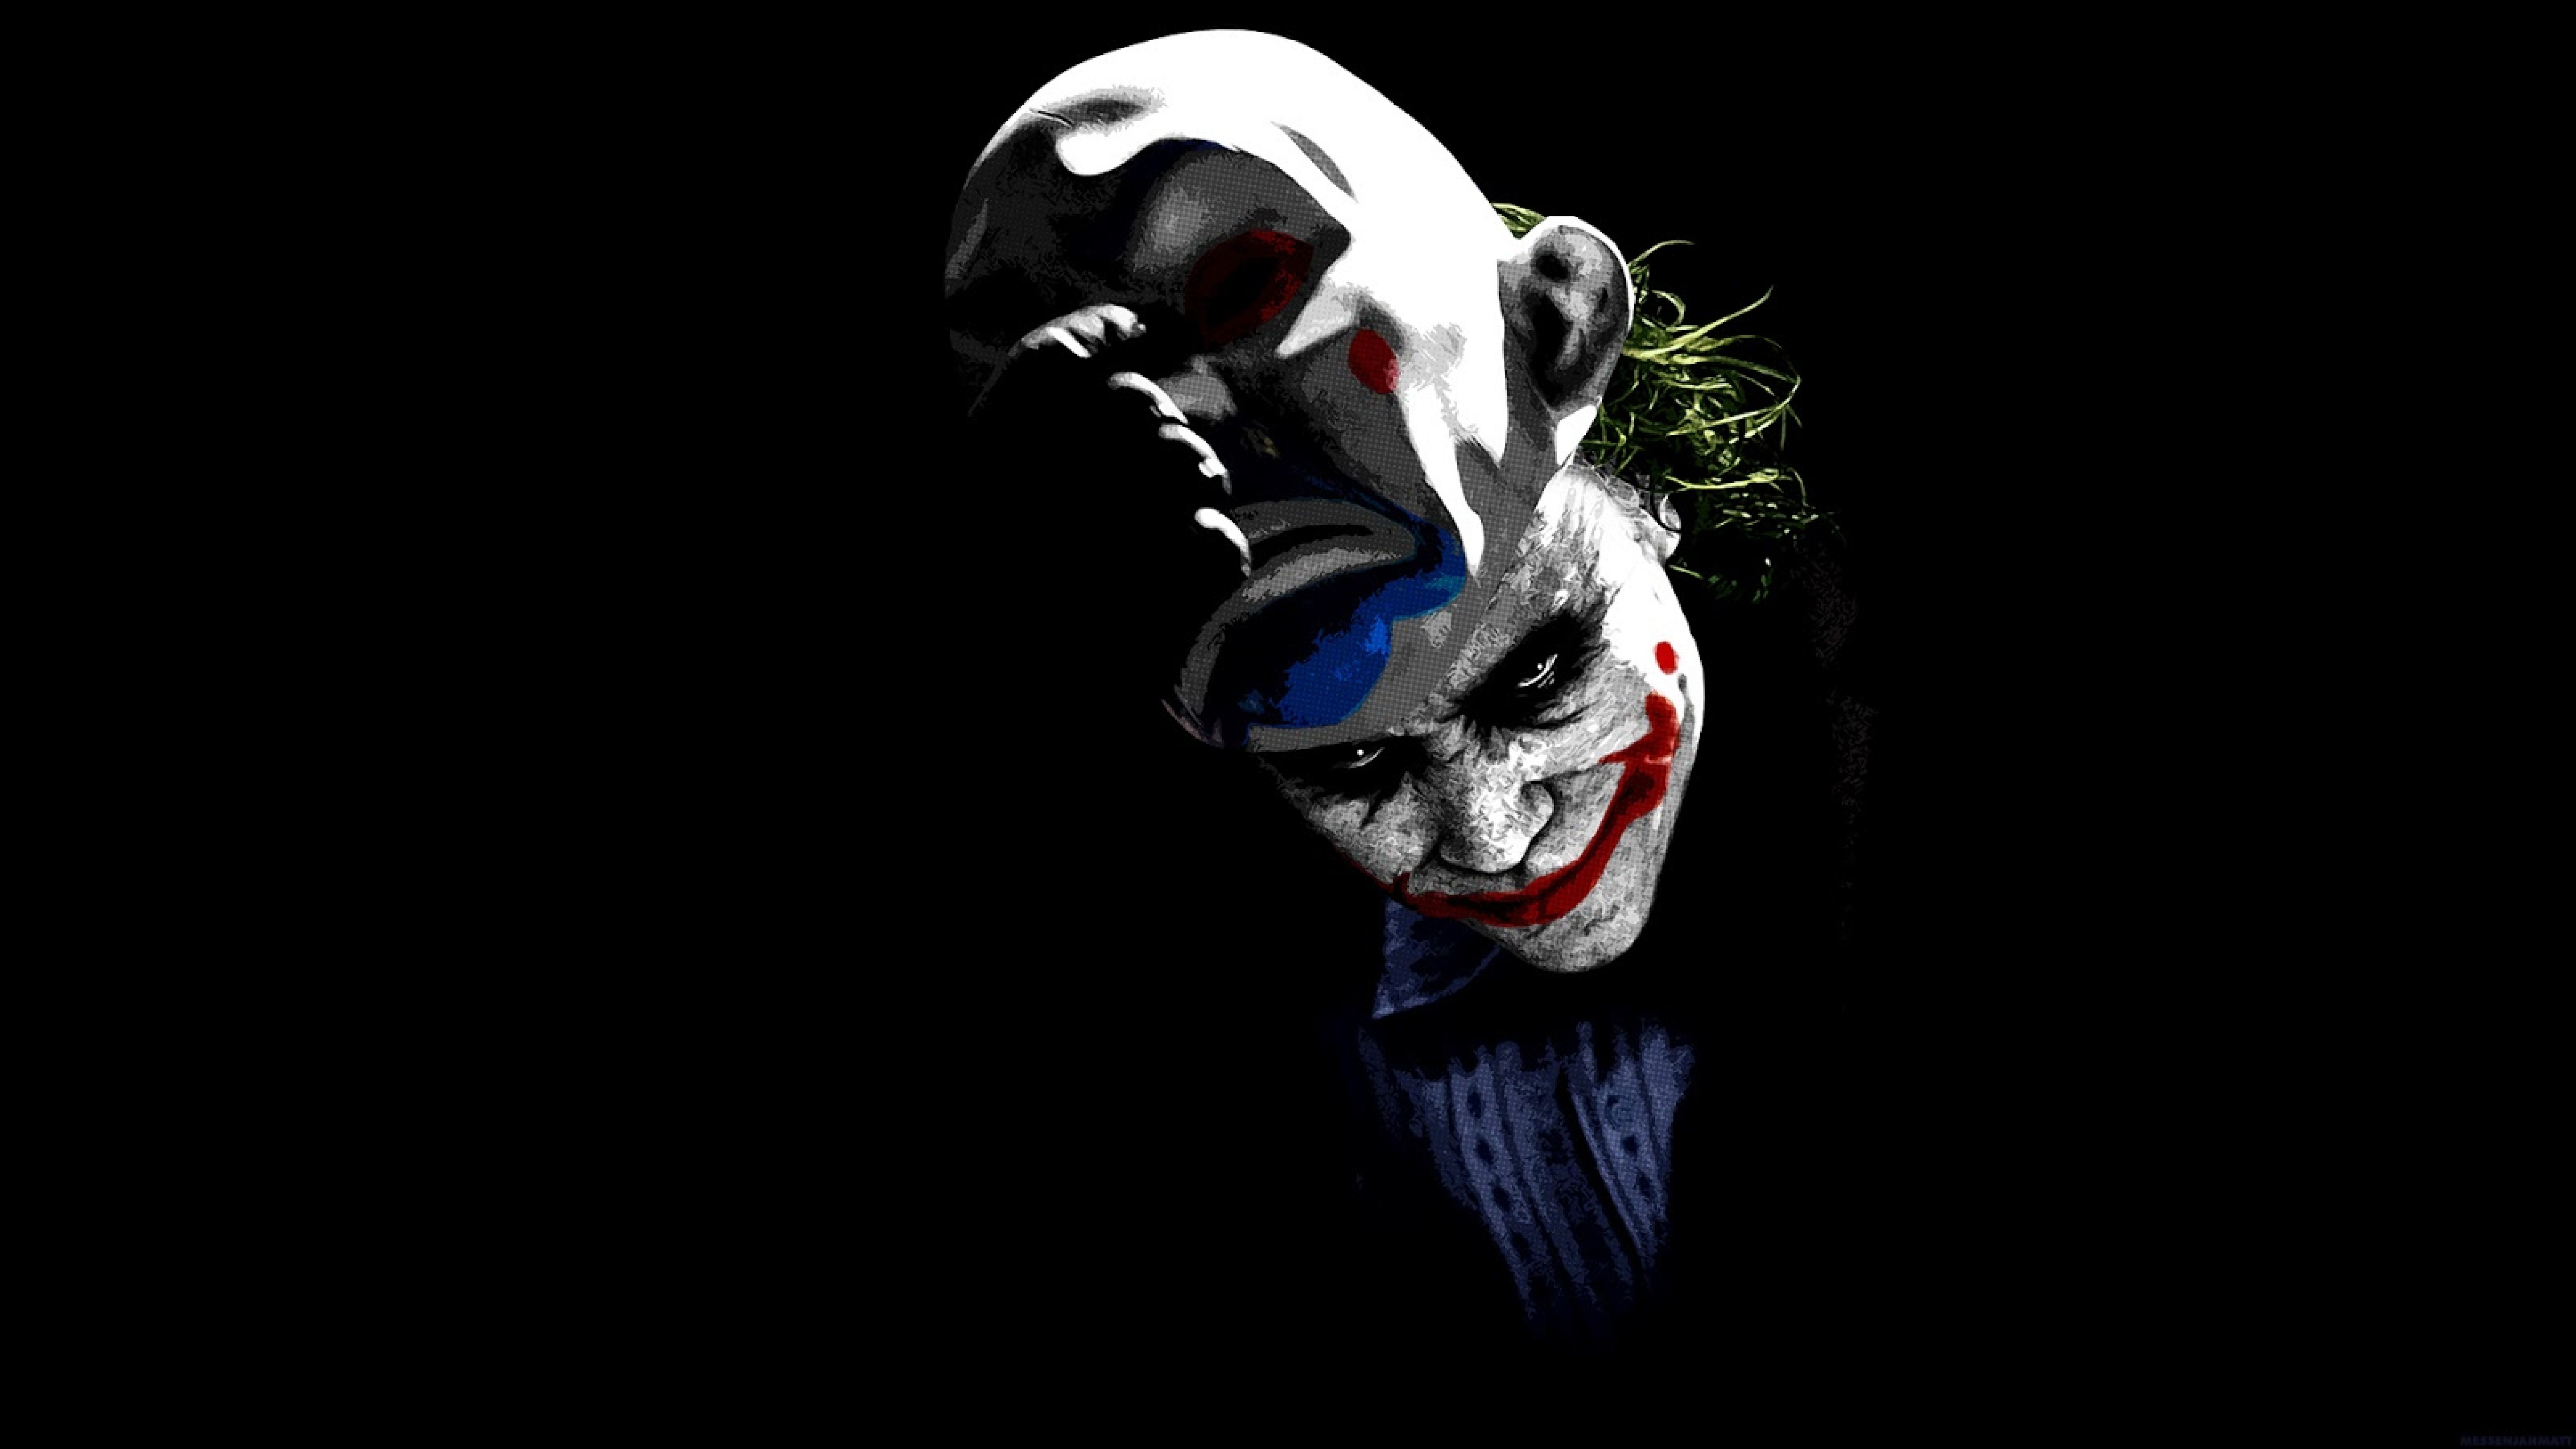 Joker 4K Ultra HD Wallpaper Free Joker 4K Ultra HD Background